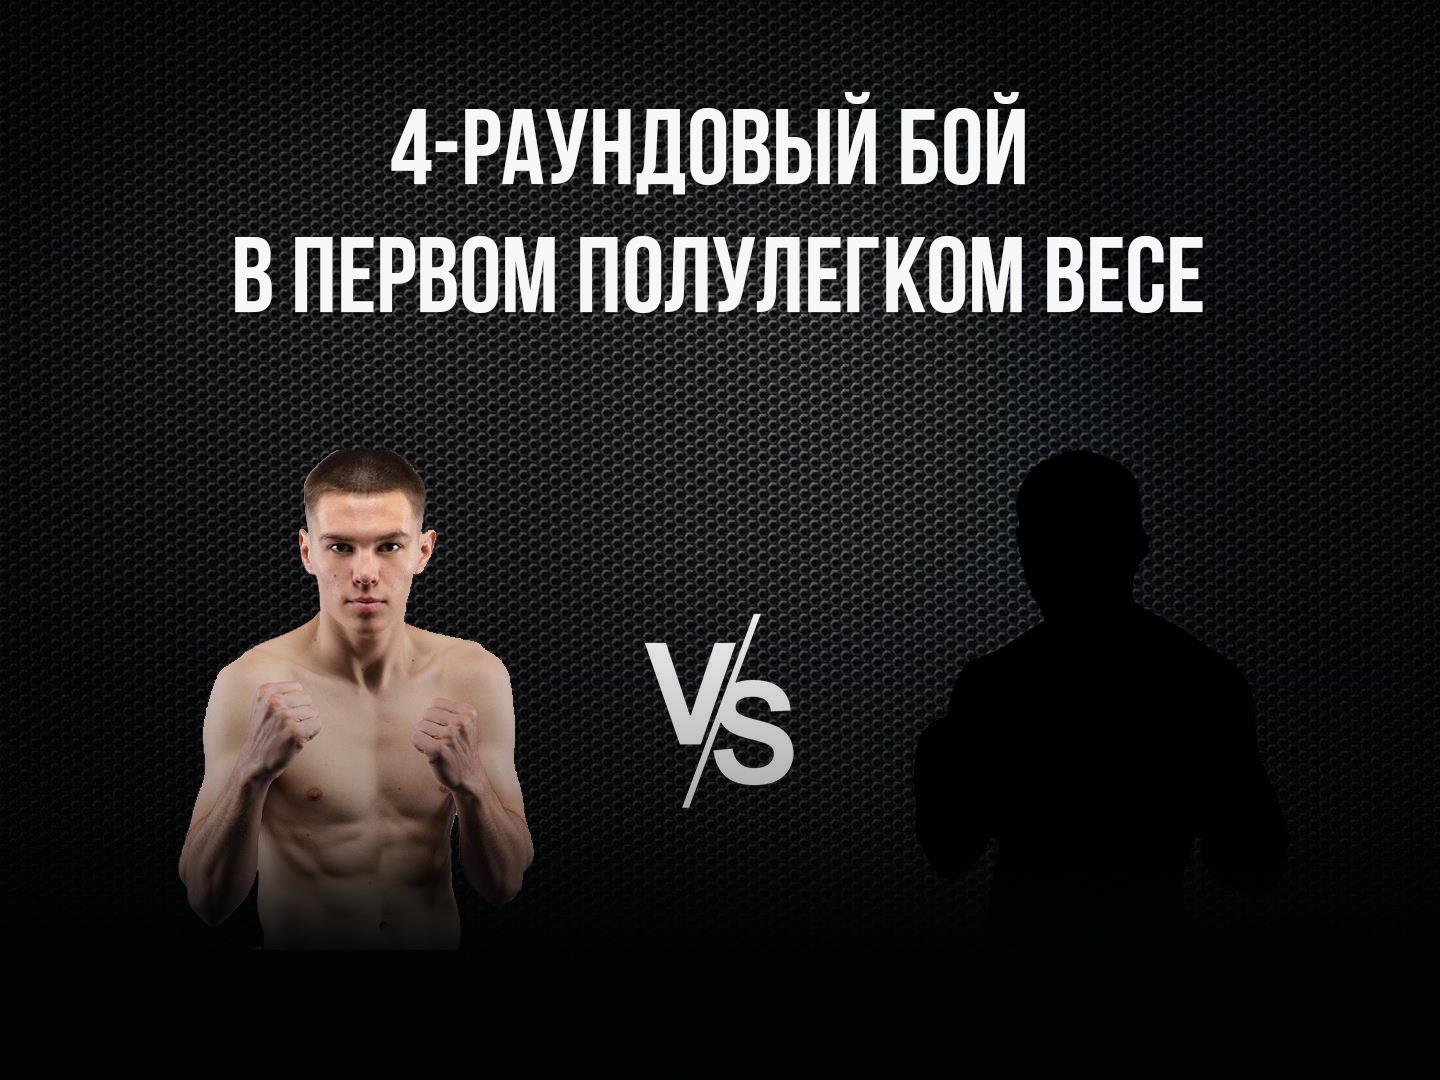 4-раундовый бой в первом полулегком весе (до 55,3 кг). Евгений Ляшков (Россия) - Беимбет Есов (Россия)